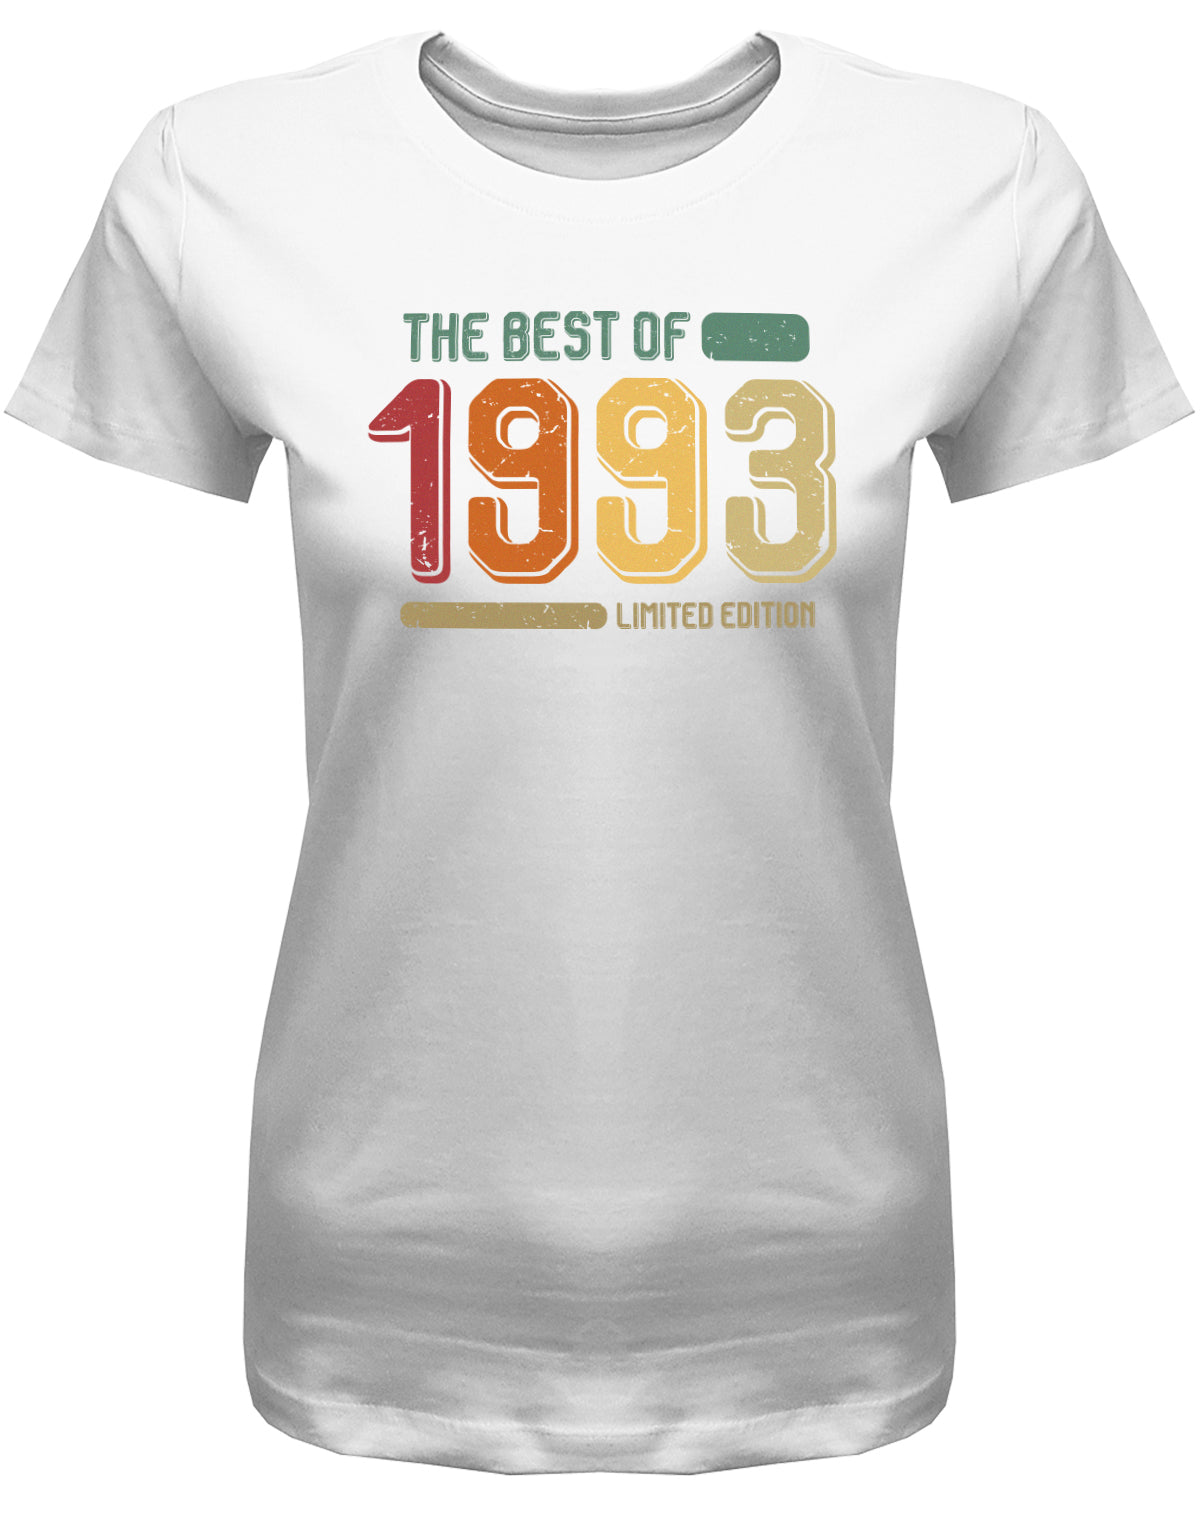 Lustiges T-Shirt zum 30. Geburtstag für die Frau Bedruckt mit: The Best of 1993 Limited Edition Retro Vintage ✓ Geschenk zum 30 geburtstag Frau ✓ 1993 geburtstag Frau ✓ 30 Geburtstag tshirt ✓ shirt geburtstag 30 Weiss